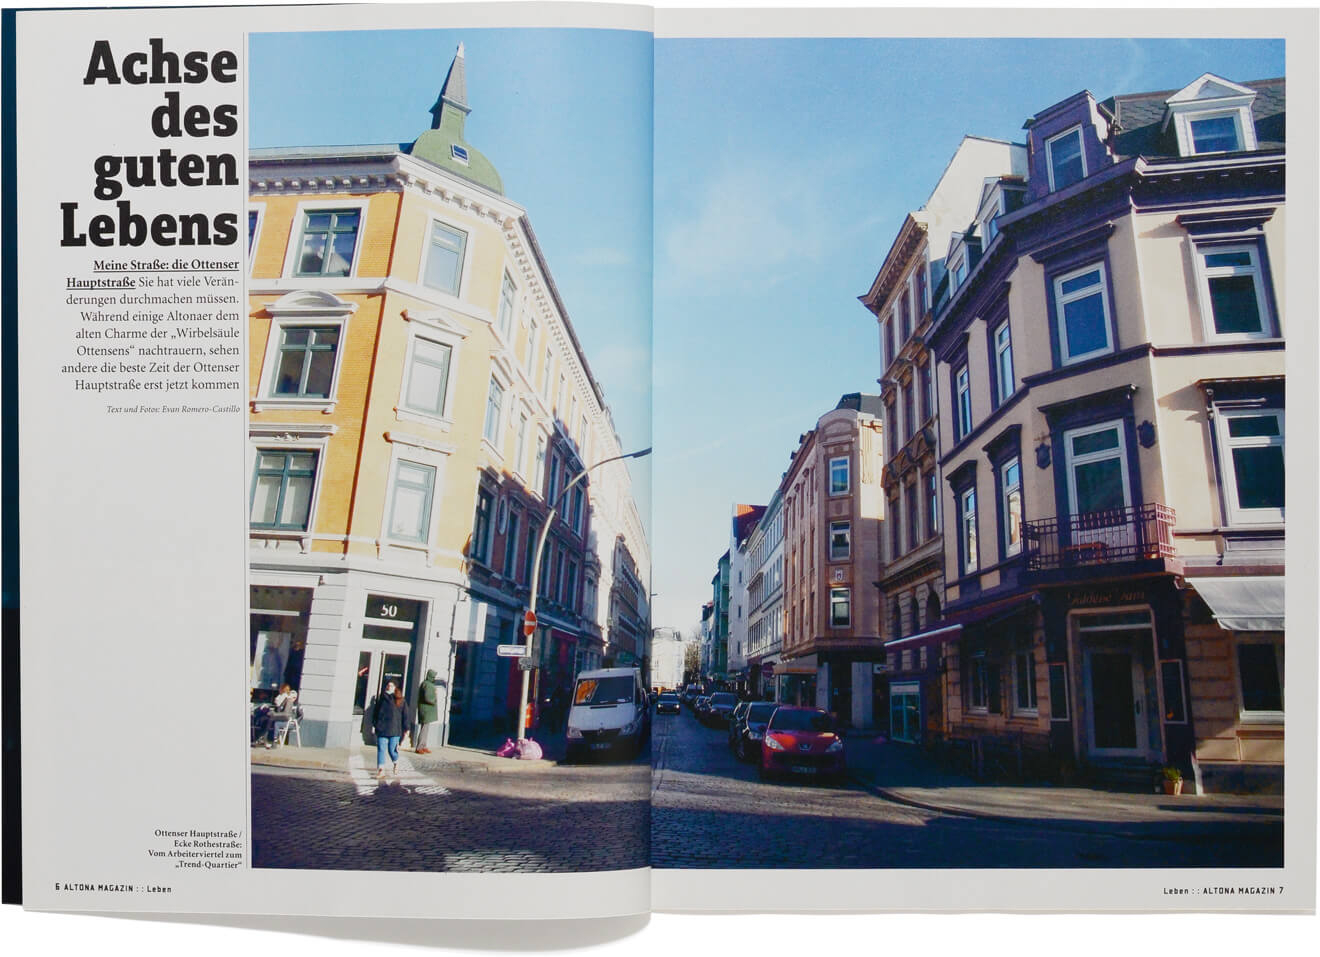 „Altona Magazin“ halbjährlich über Menschen, Orte und Leben des Hamburger Stadtteils Altona.